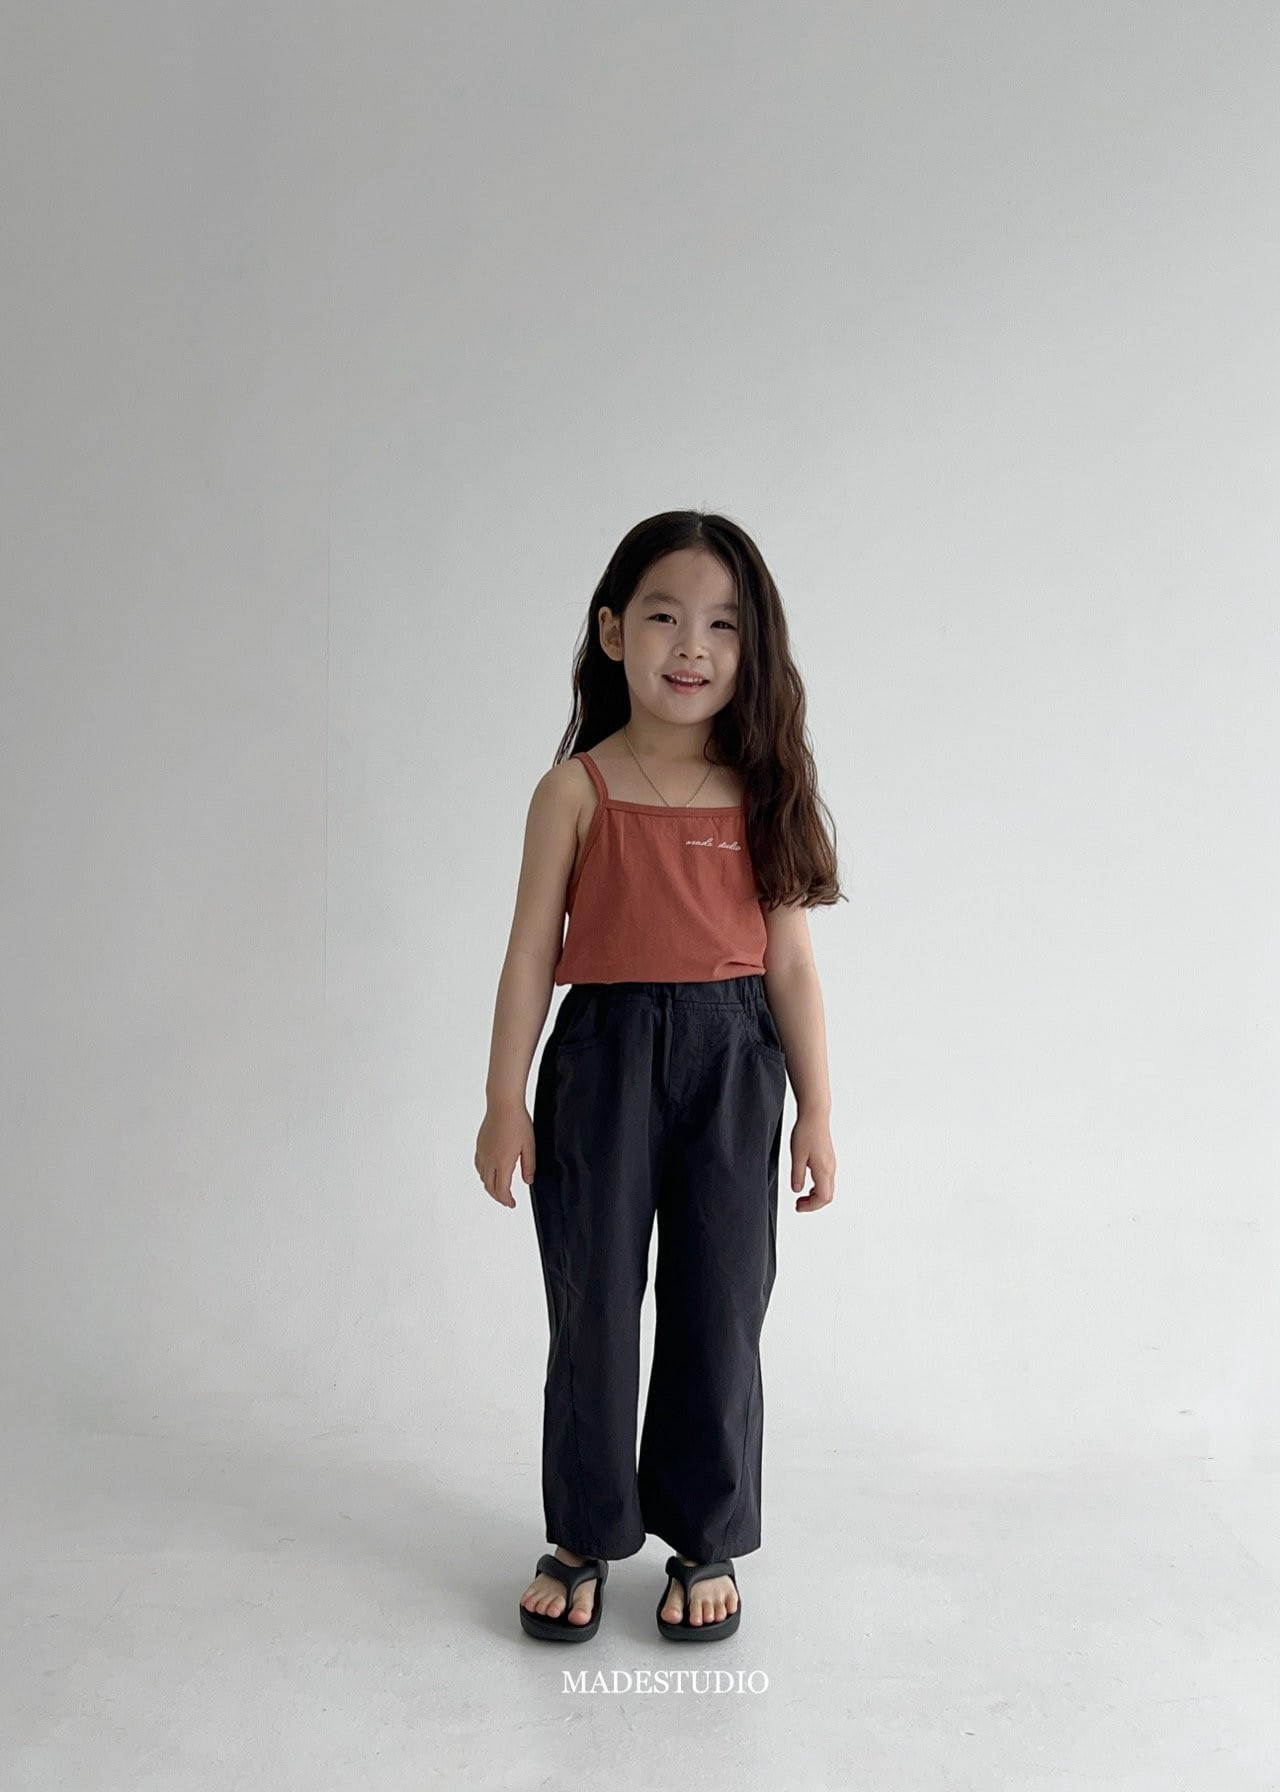 Made Studio - Korean Children Fashion - #discoveringself - Salt Sleevless Tee - 4